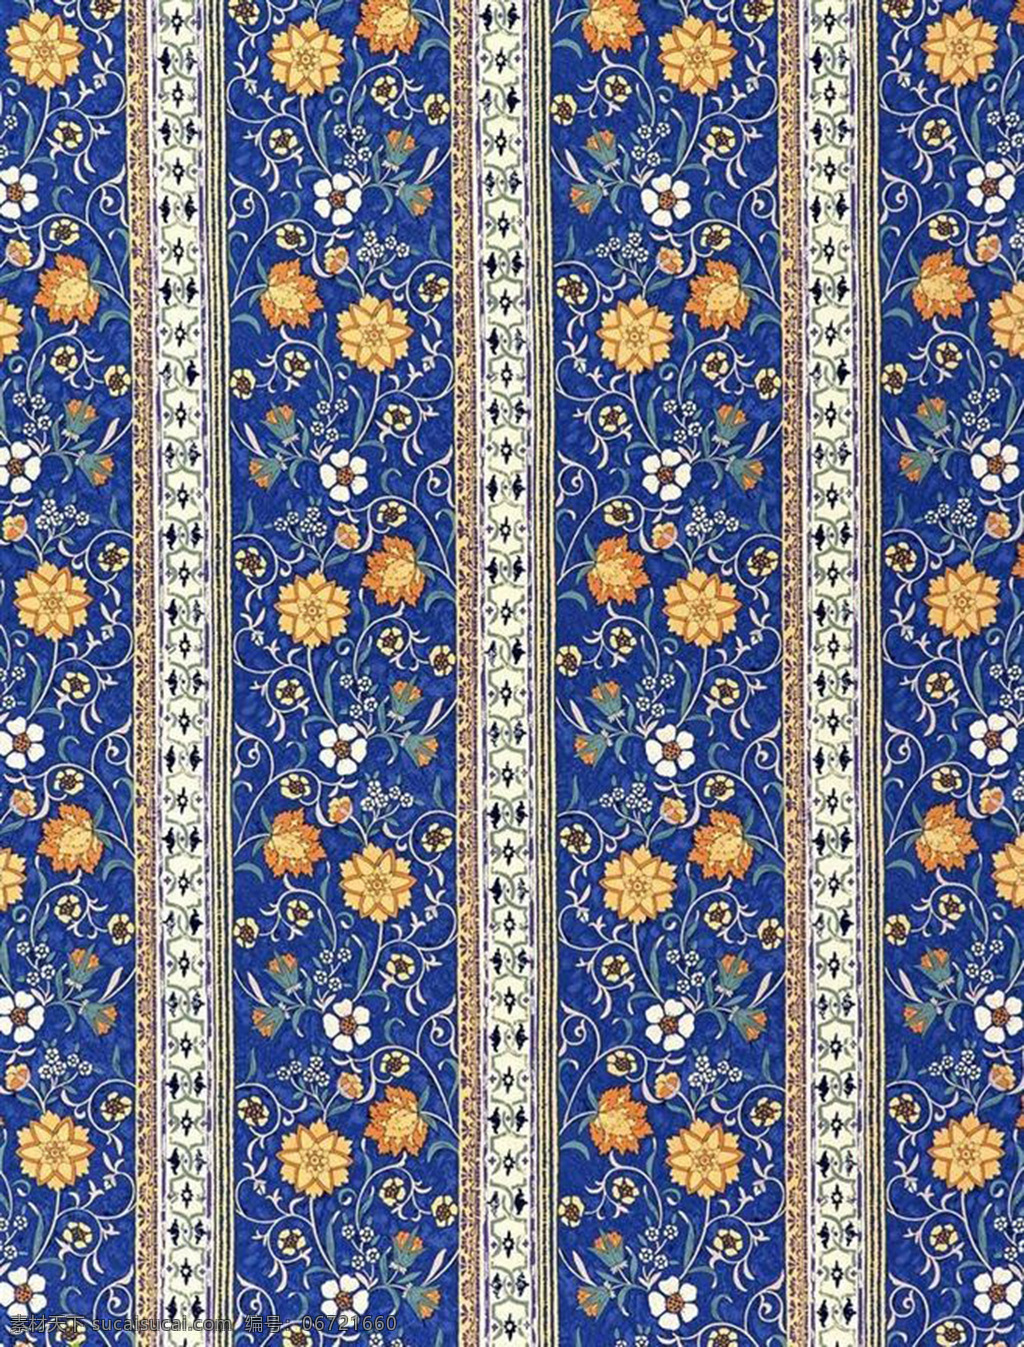 印染 蓝色 花卉 布纹 背景 设计素材 布料 背景底纹 布纹背景